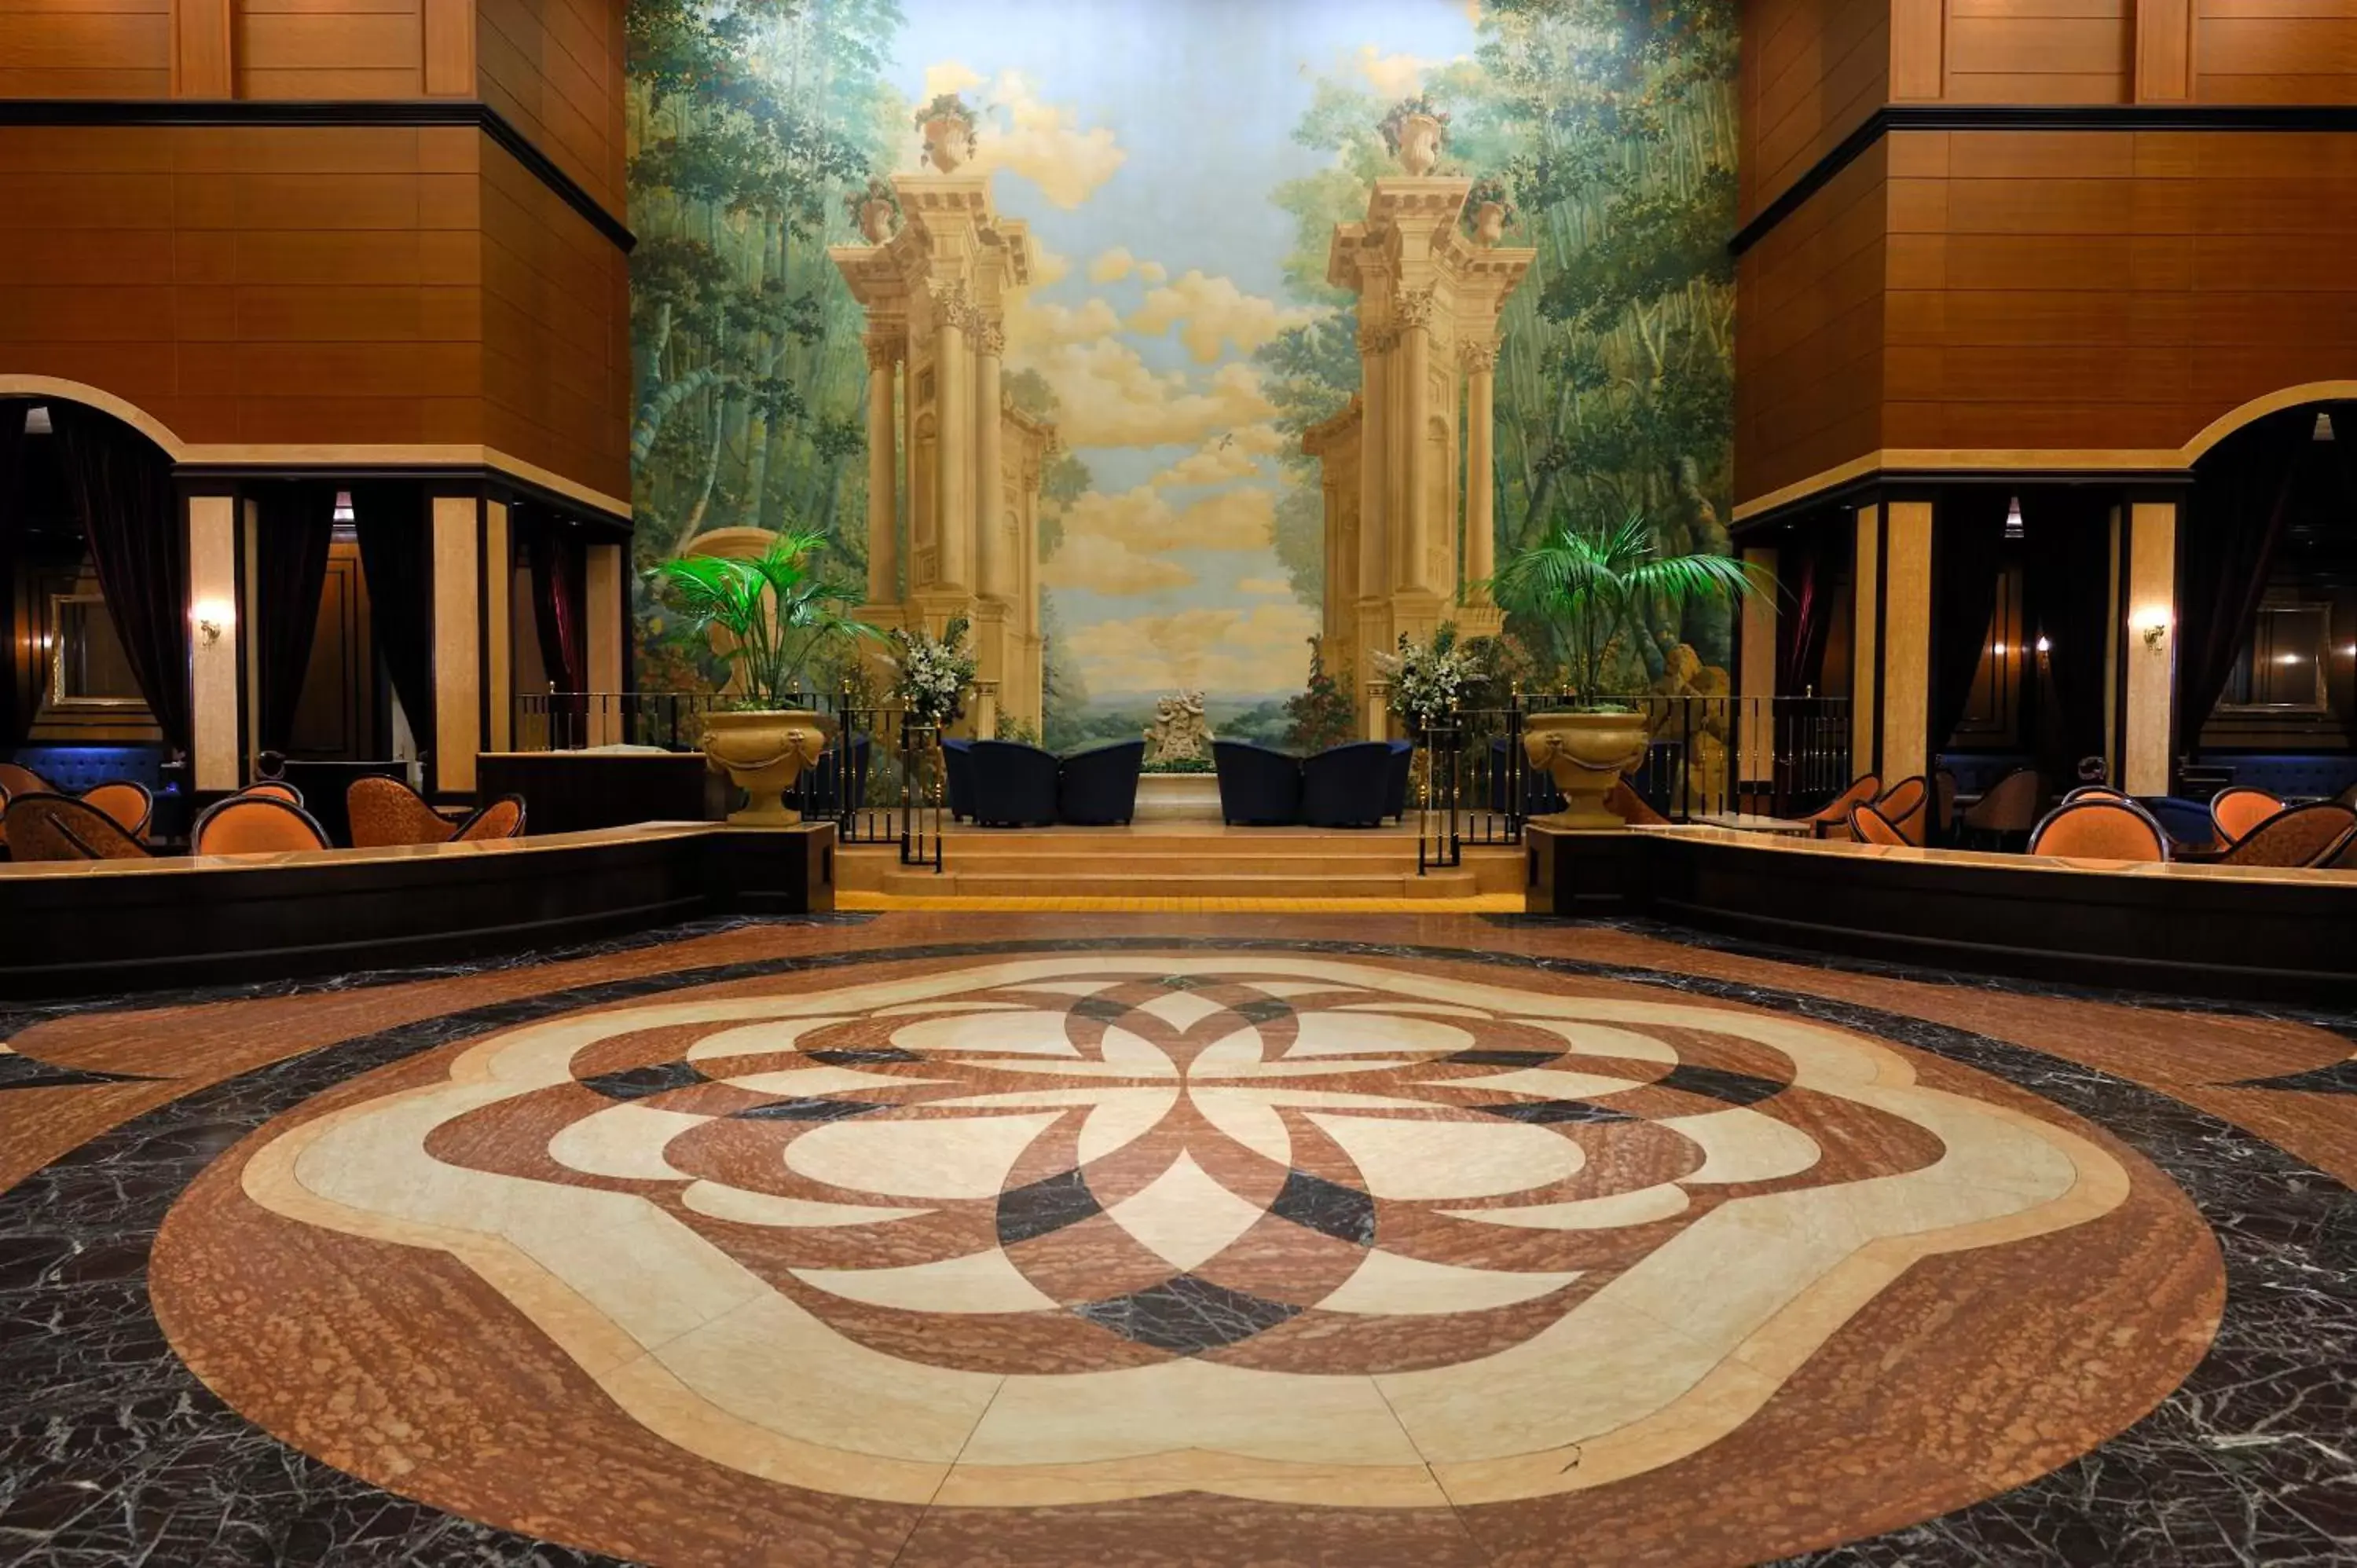 Lobby or reception in Dai-ichi Hotel Tokyo